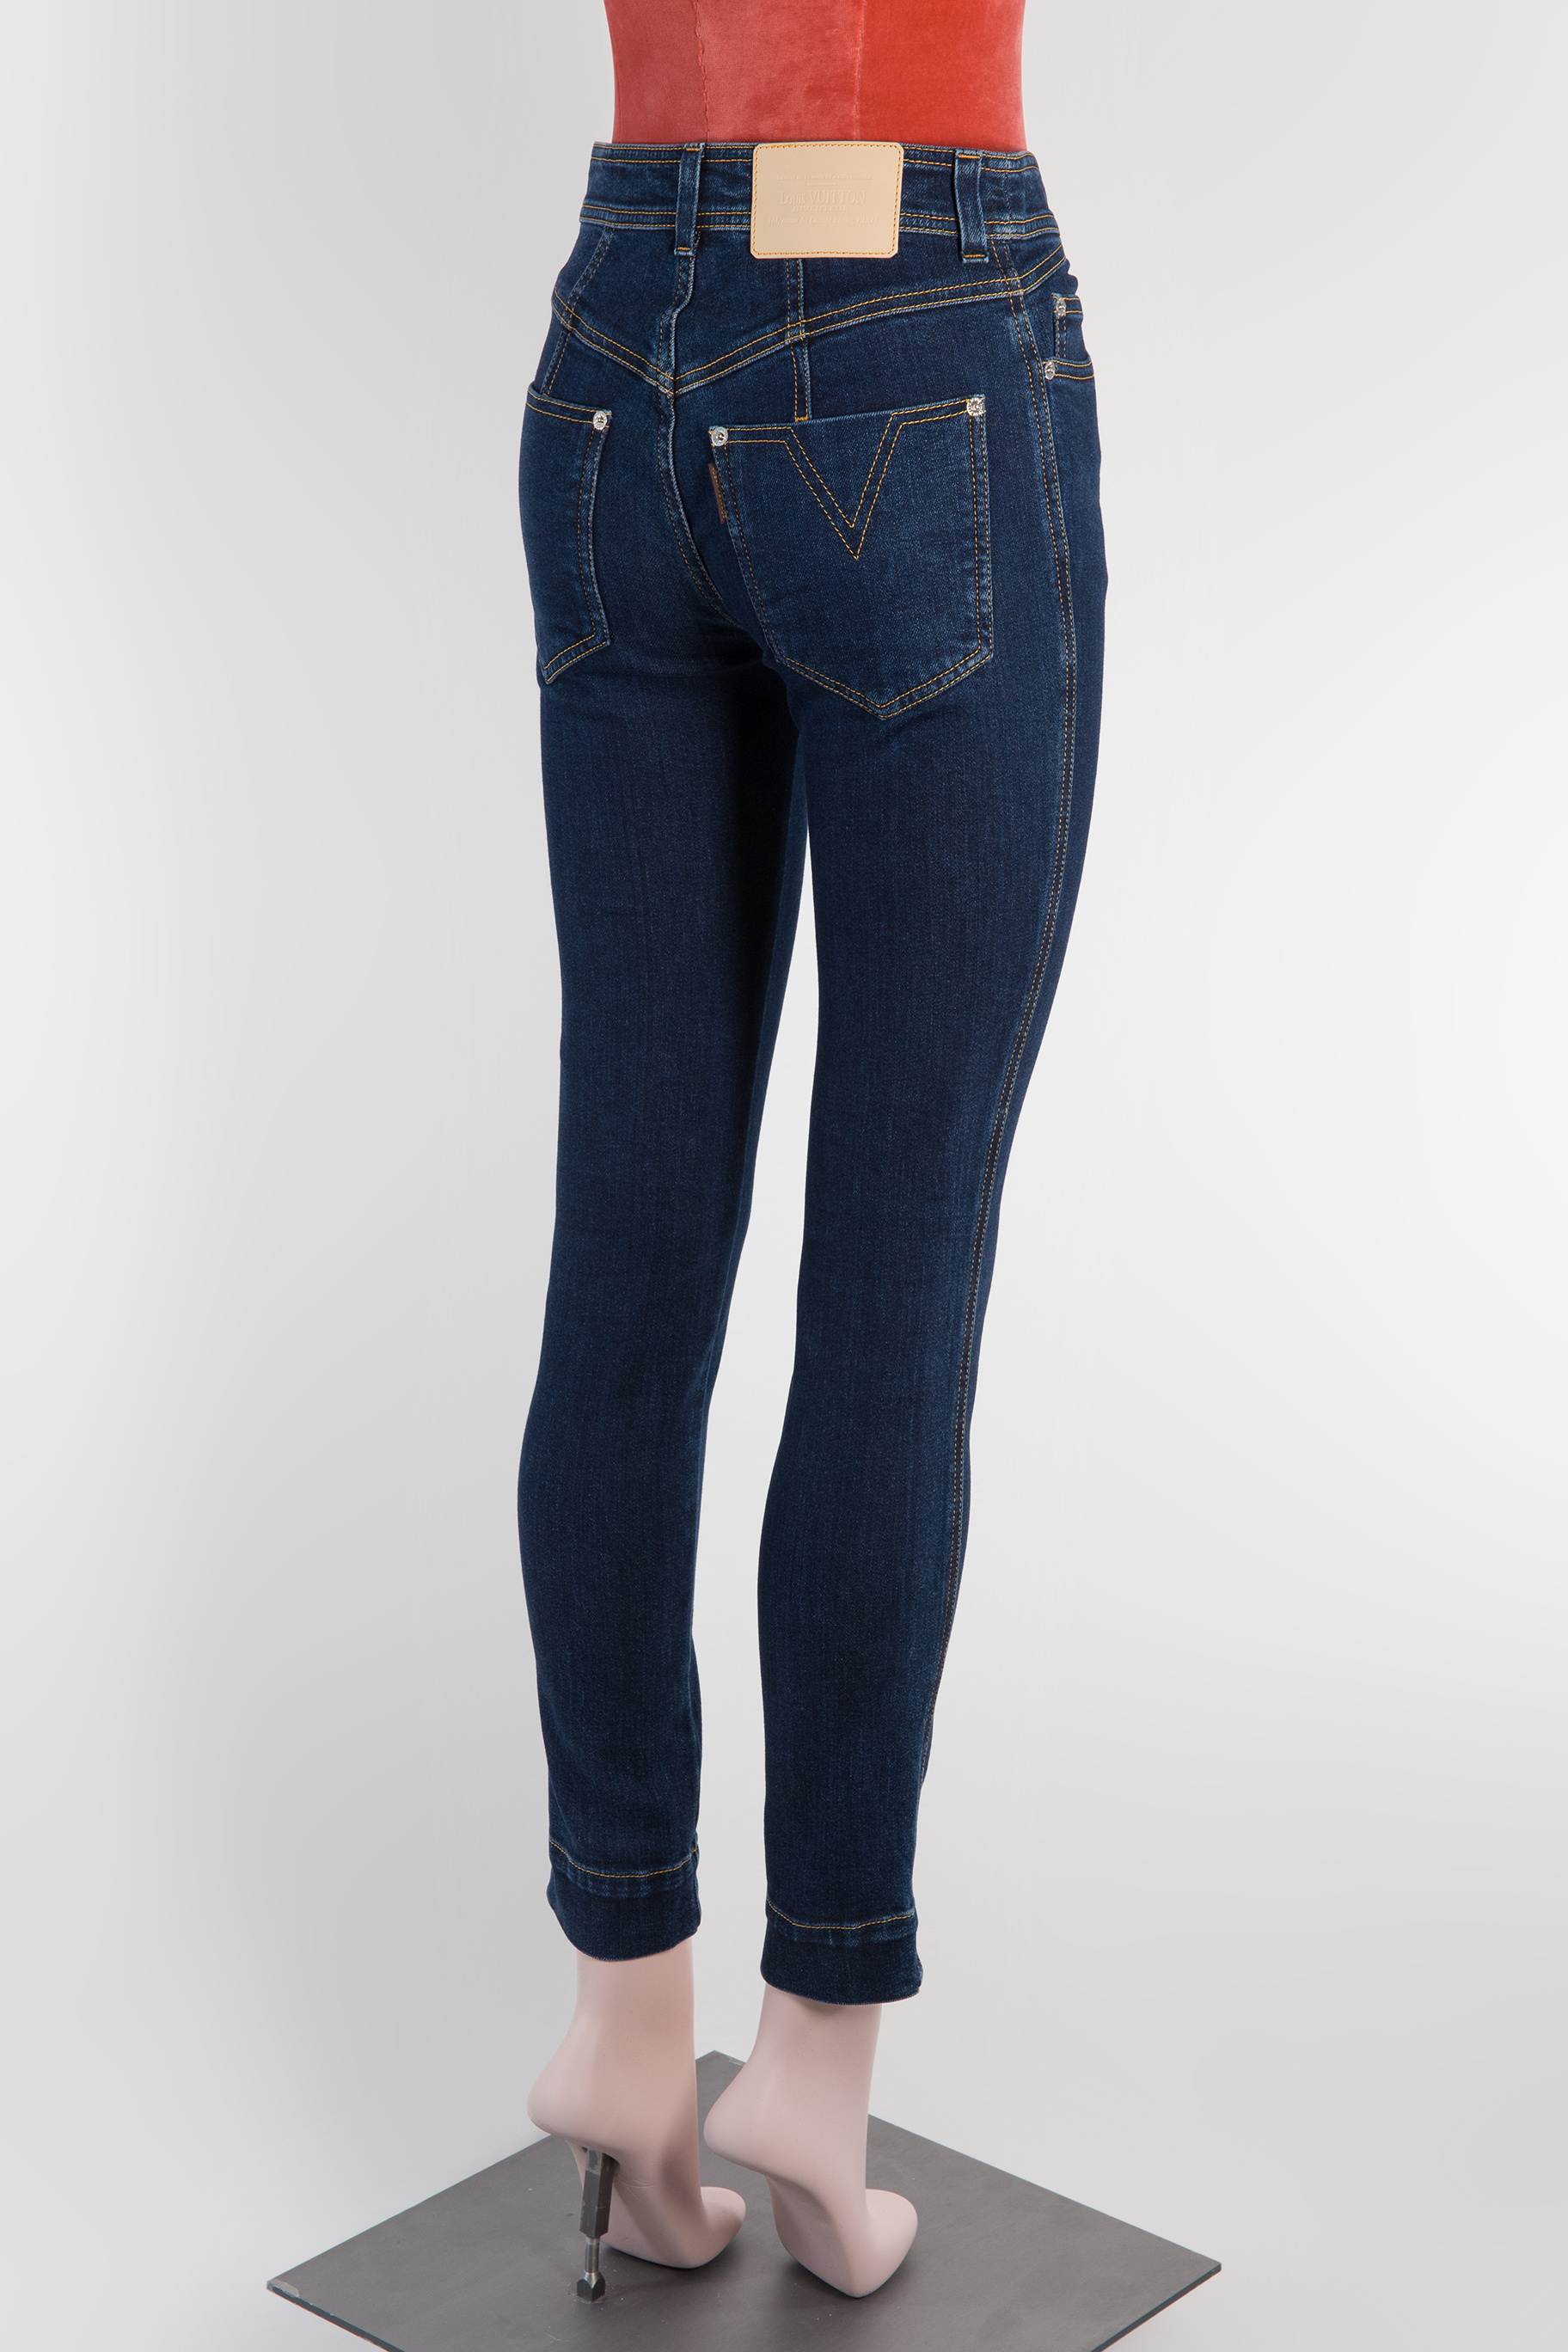 Louis Vuitton Jeans, FR36 - Huntessa Luxury Online Consignment Boutique